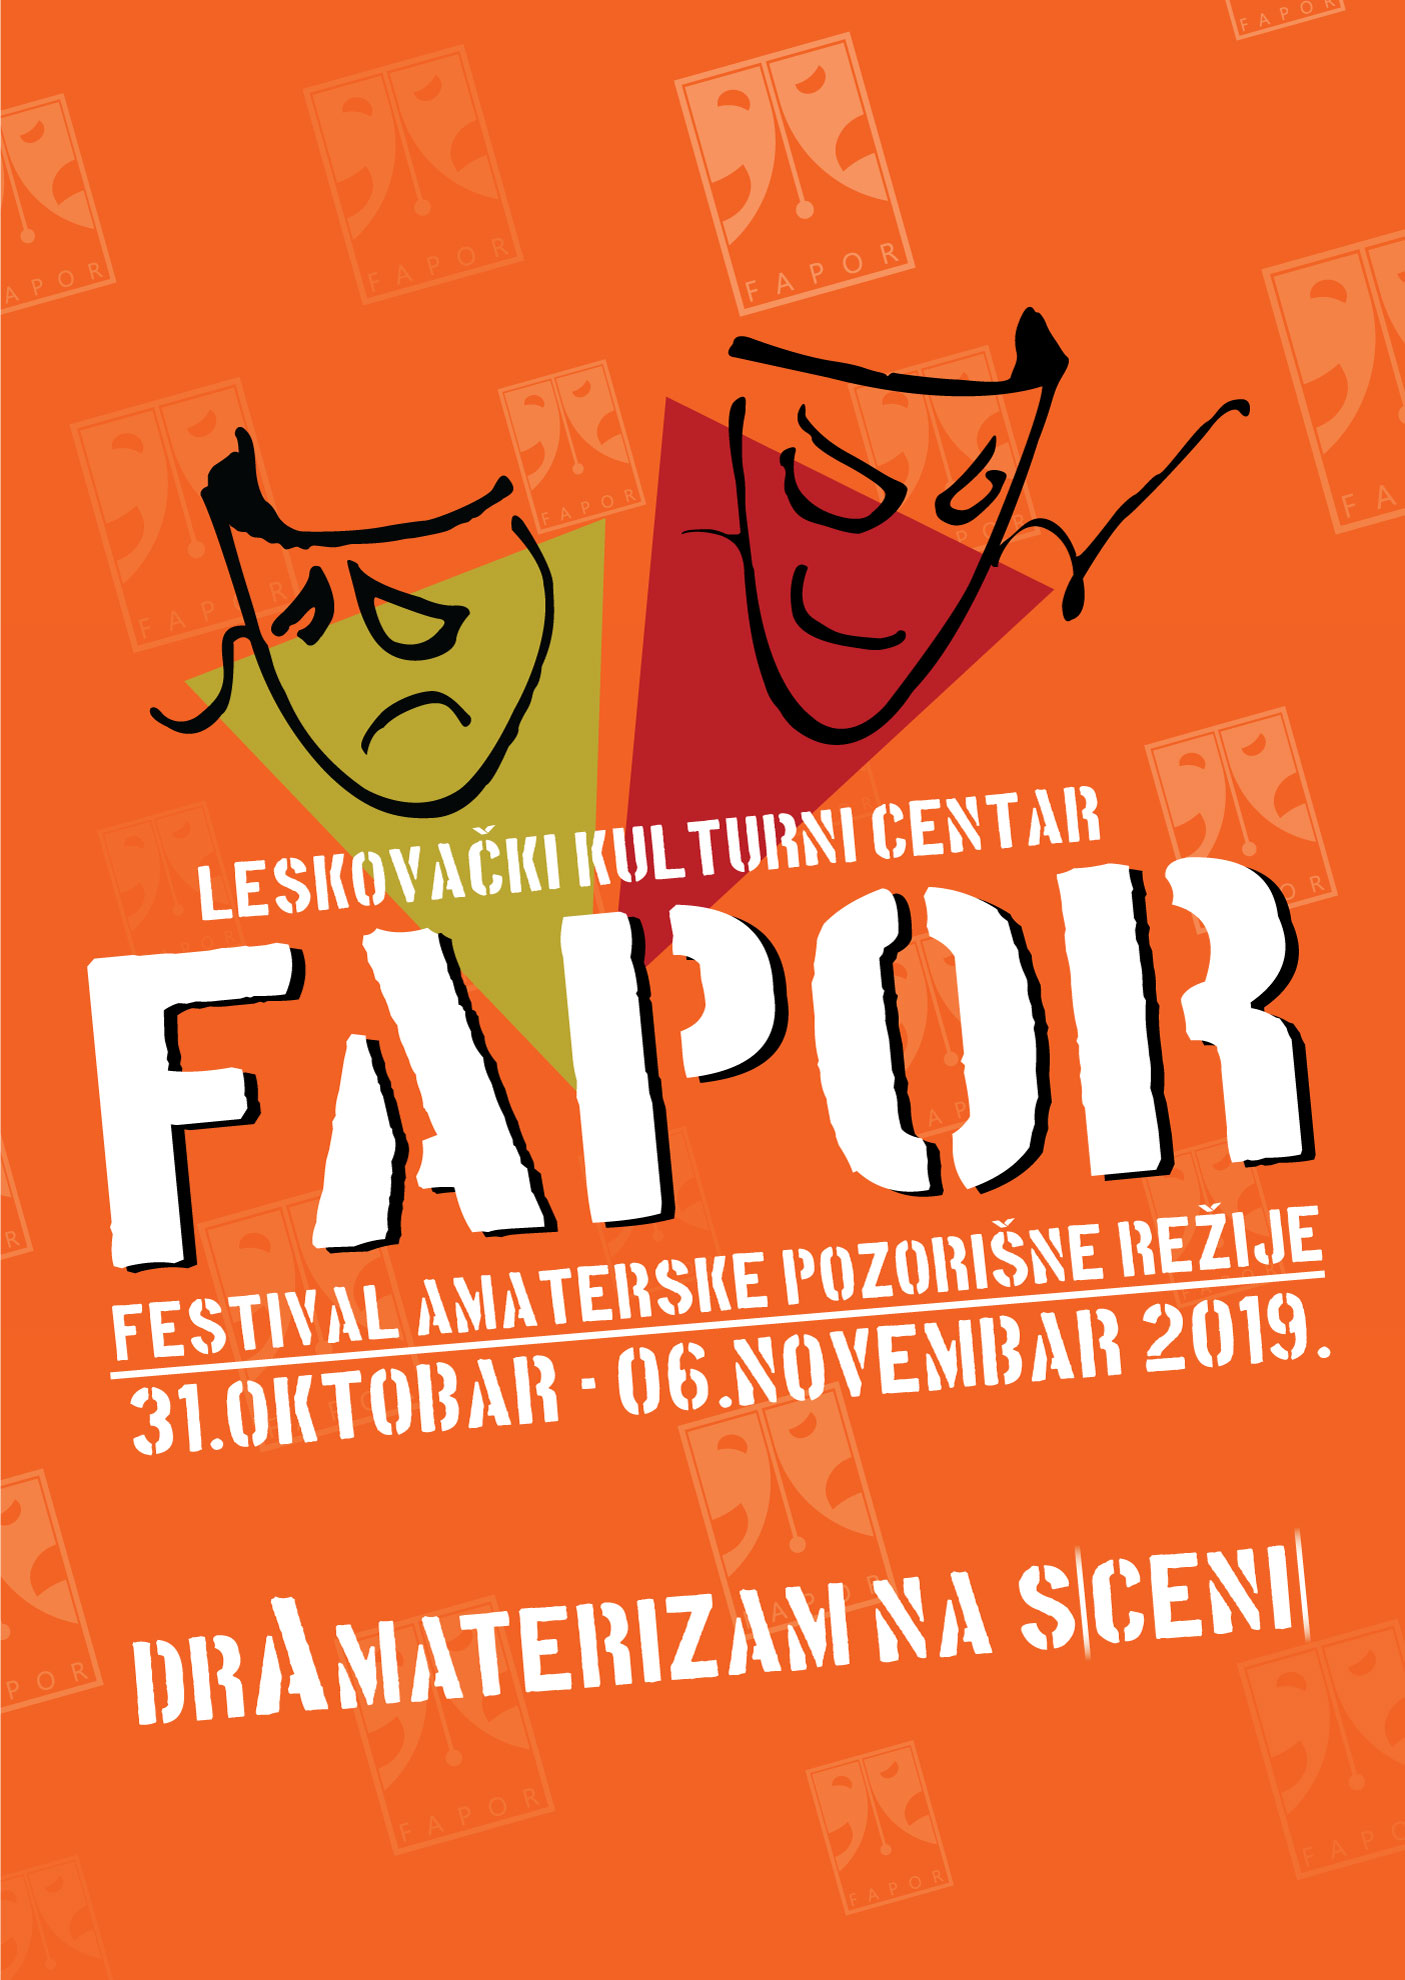 7. Festival amaterske pozorišne režije FAPOR